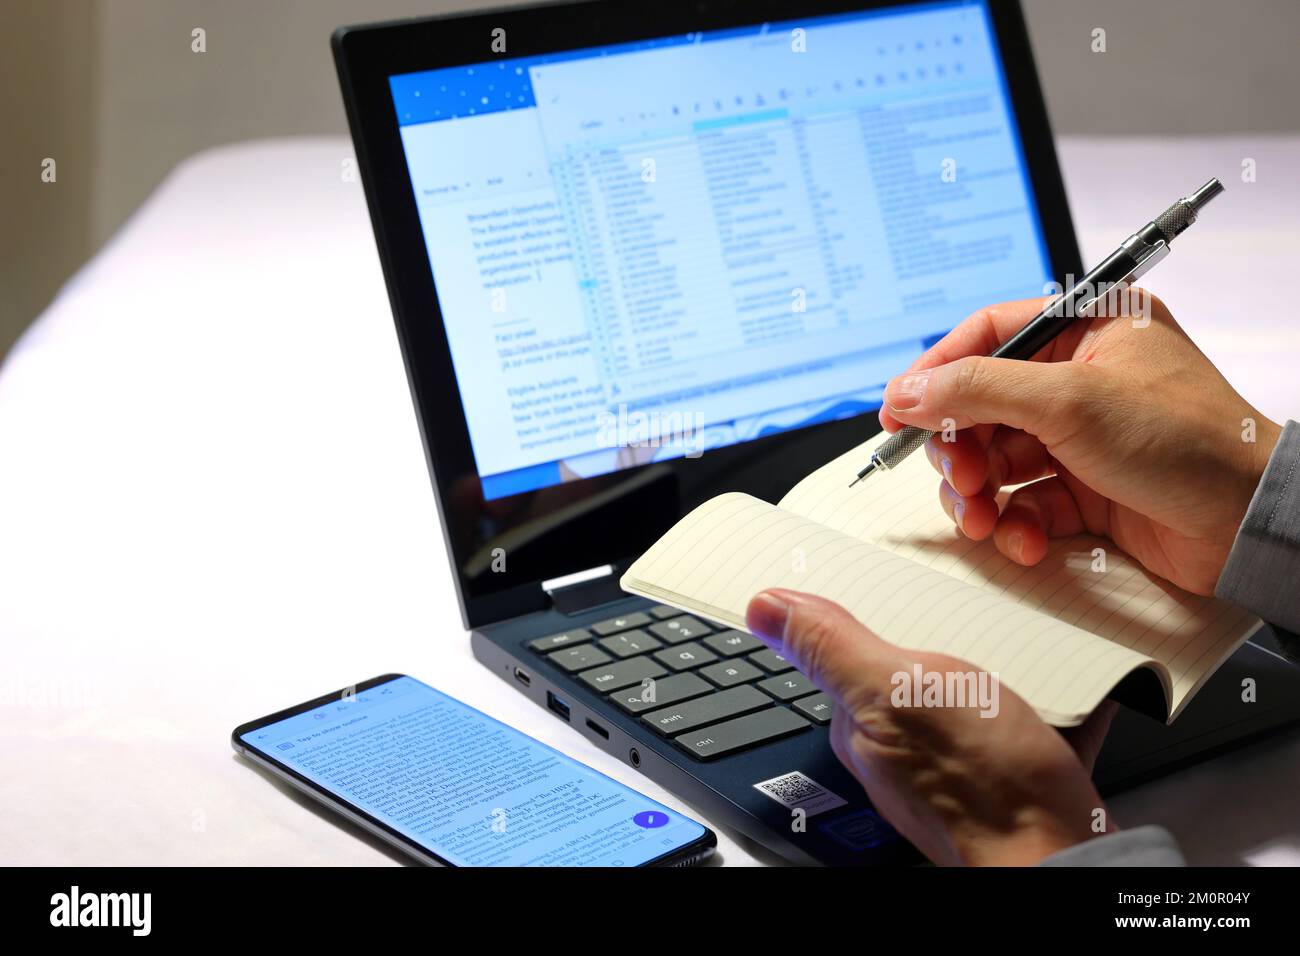 Eine Nahaufnahme der Hände einer Person, die einen Bleistift und ein Notizbuch hält und Informationen aus Dokumenten aufschreibt, die auf einem Laptop-Computer angezeigt werden. Stockfoto